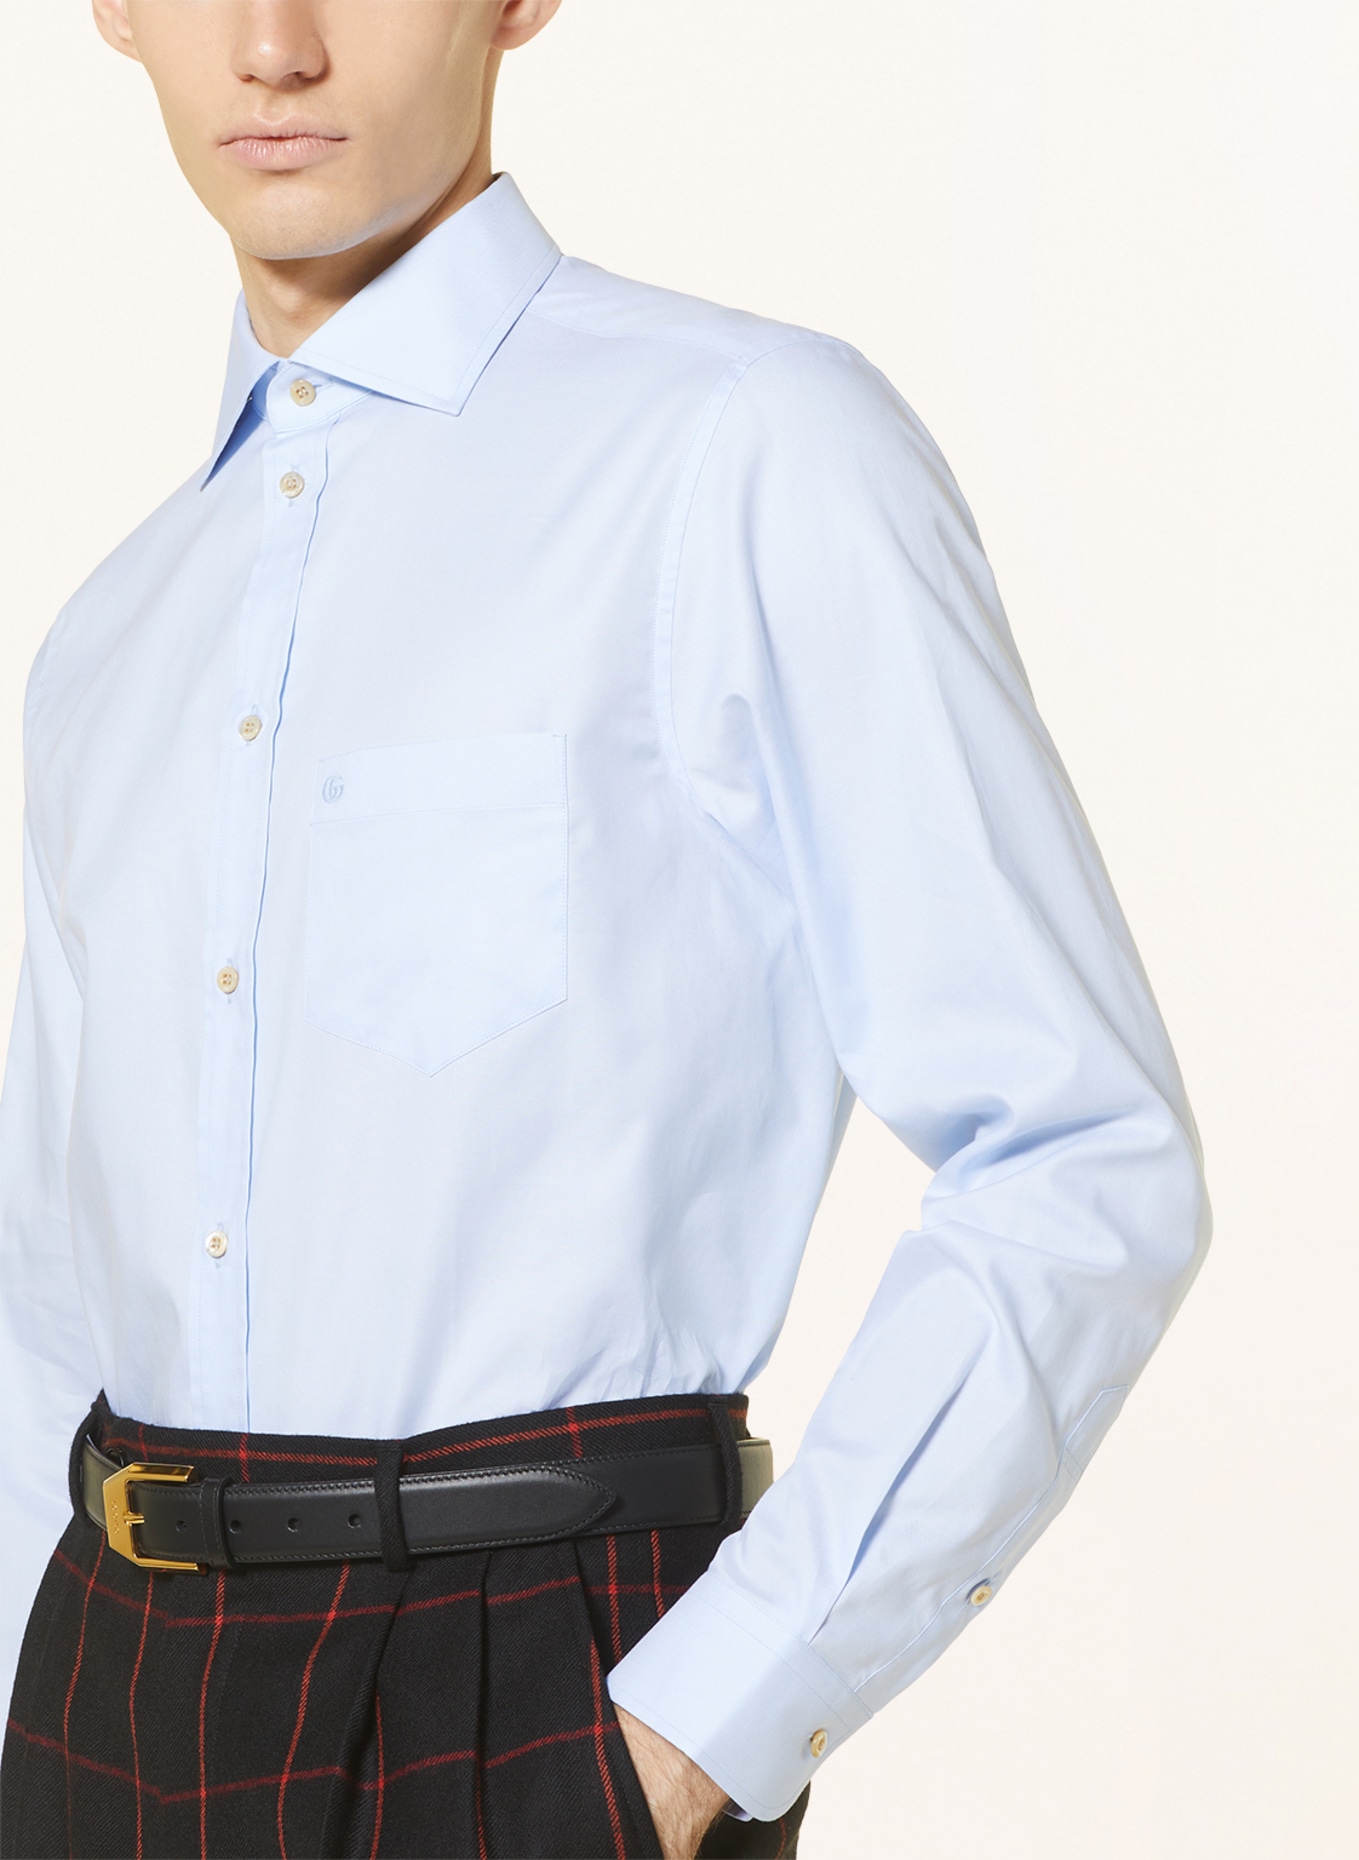 GUCCI Shirt regular fit, Color: LIGHT BLUE (Image 4)